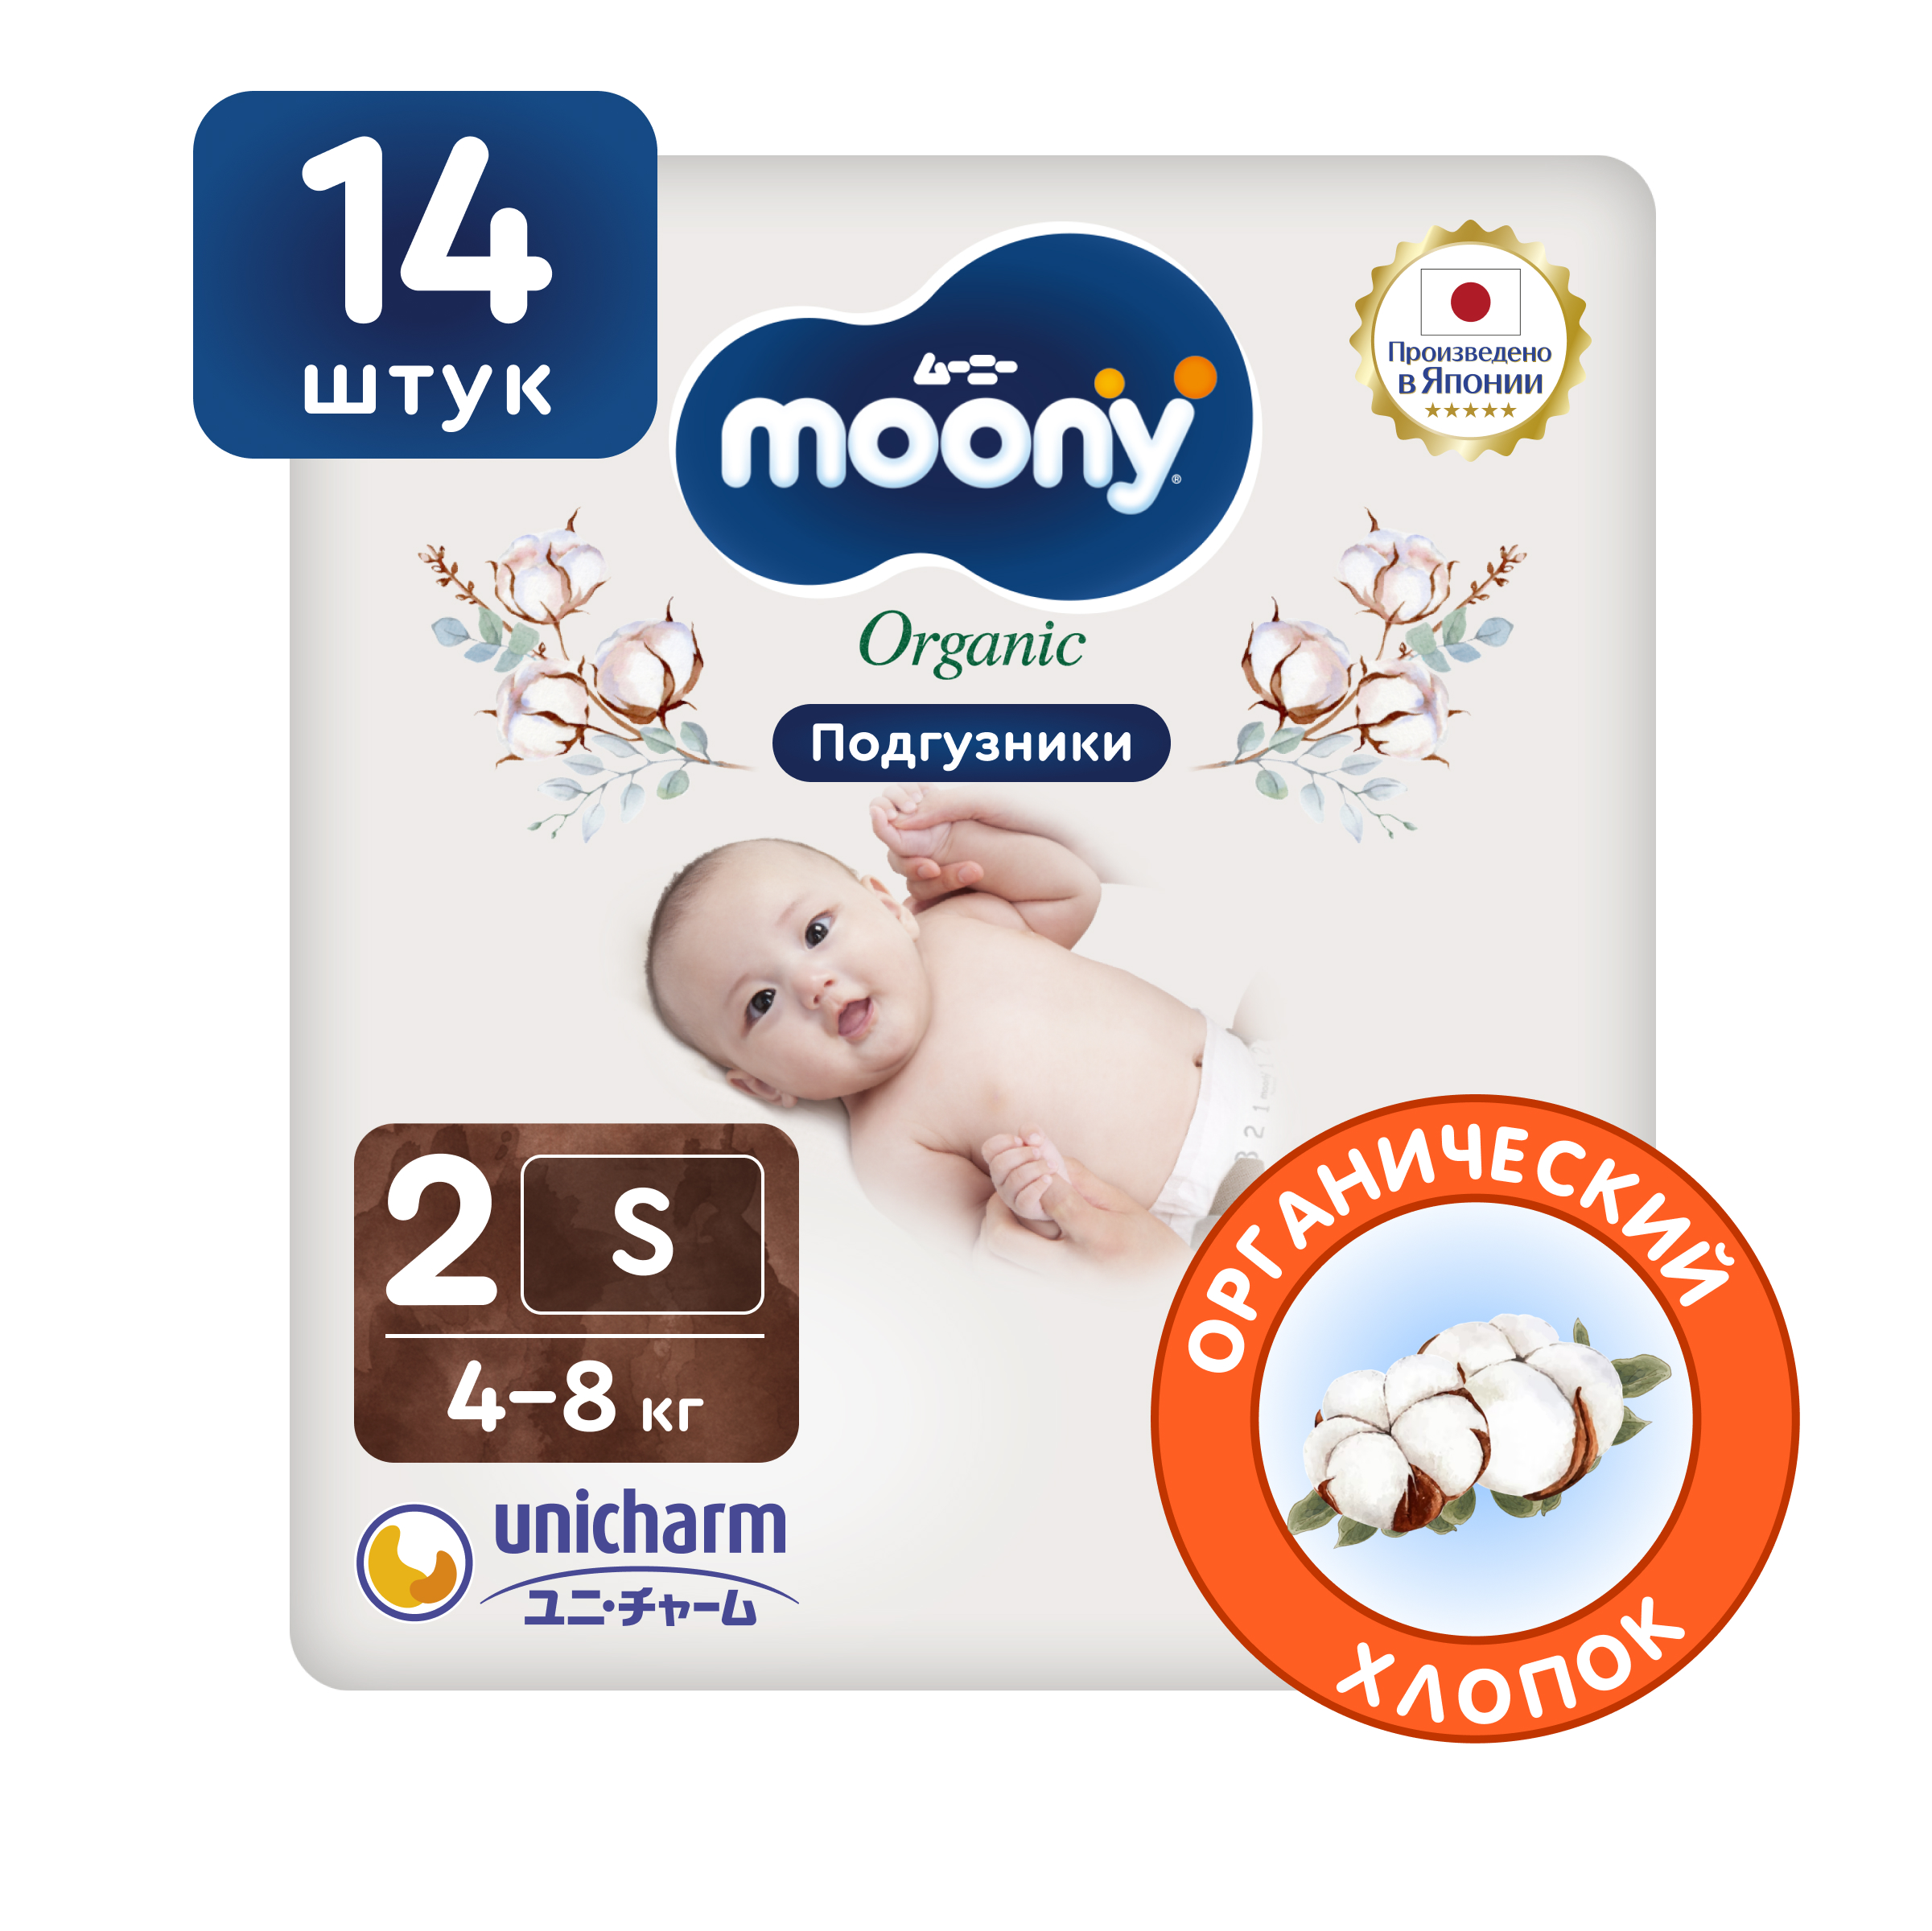 Японские подгузники для новорожденных Moony Organic 2 S, 4-8 кг, 14 шт японские подгузники для новорожденных moony organic 2 s 4 8 кг 14 шт